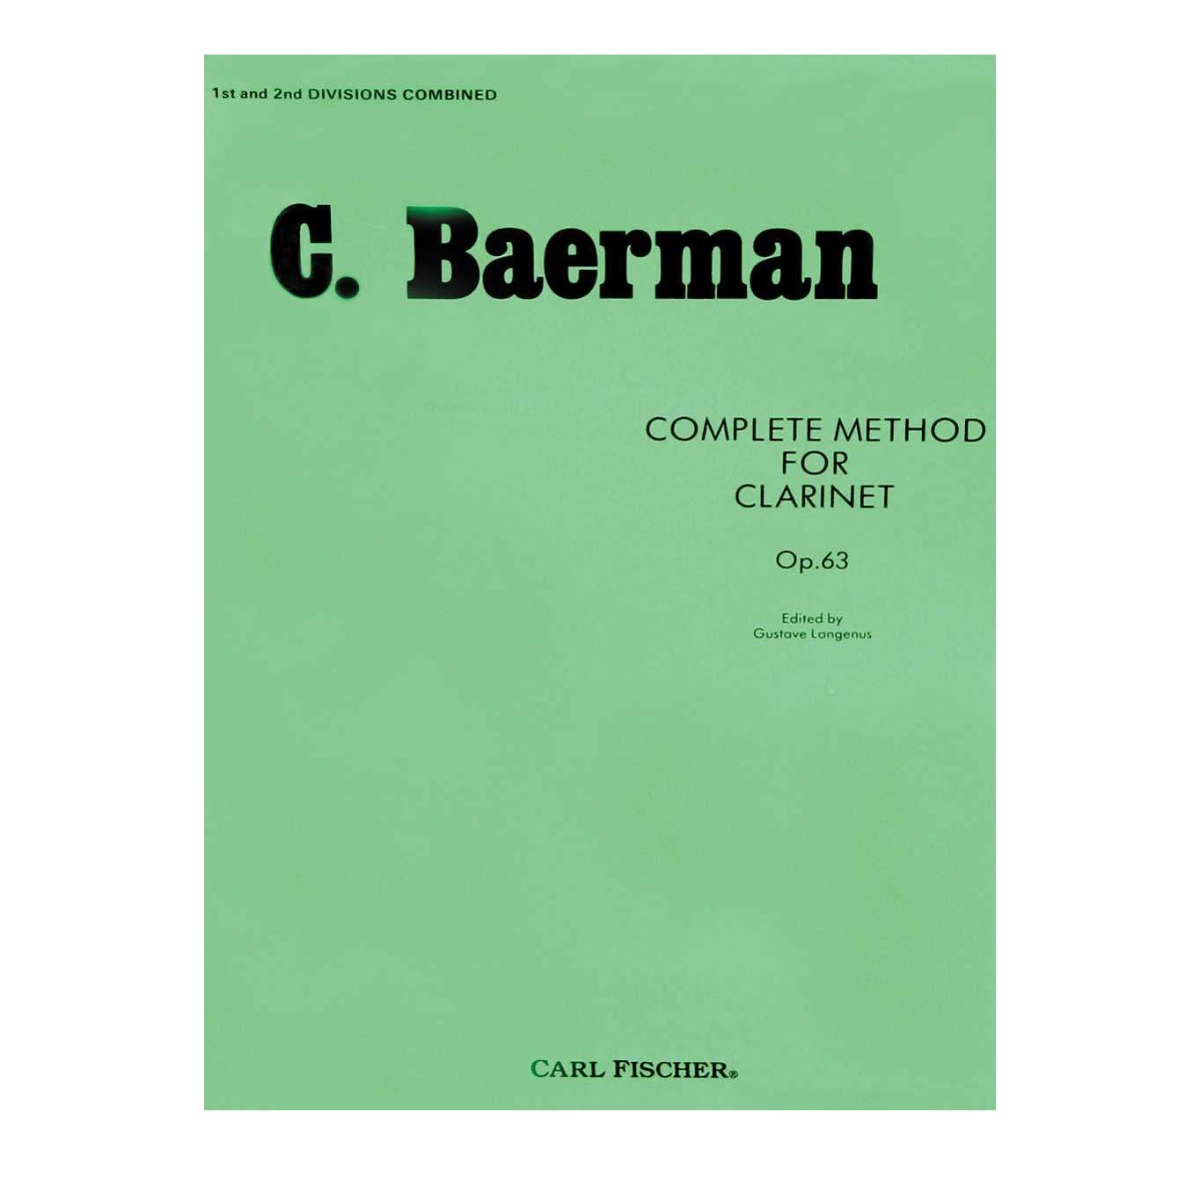 C. Baerman - Complete Method For Clarinet Op.63